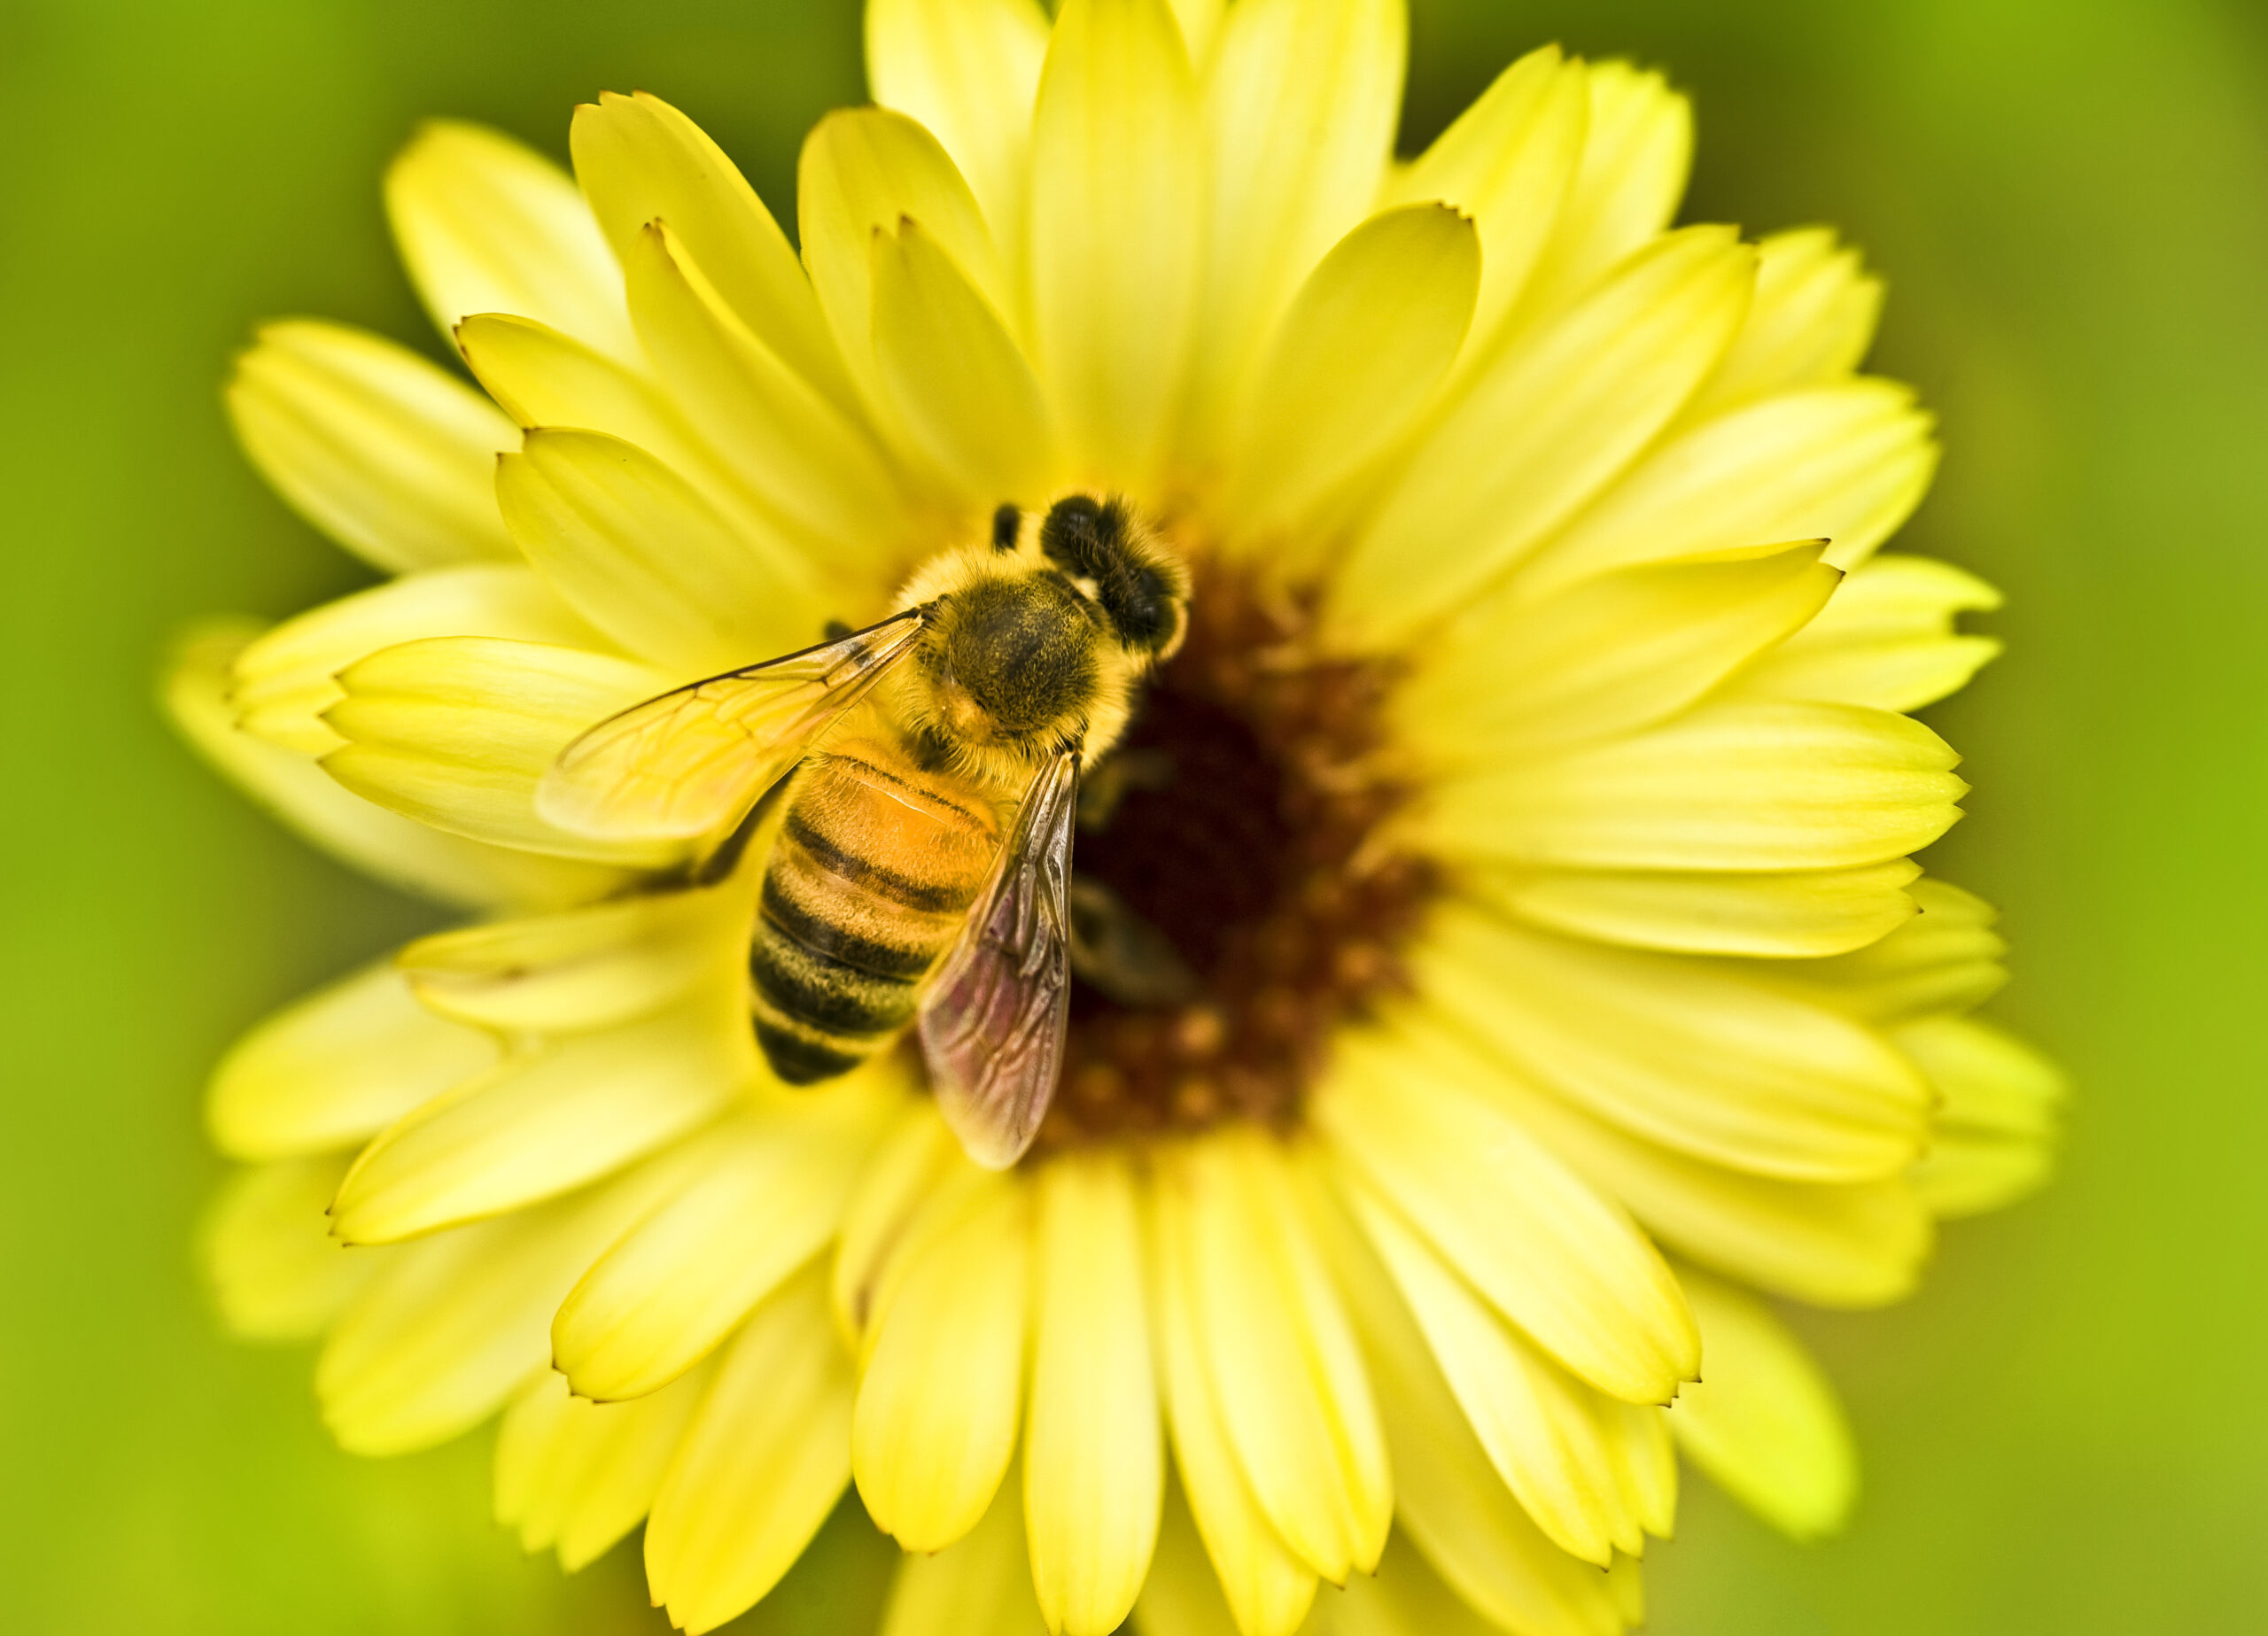 Honeybee inside a flower